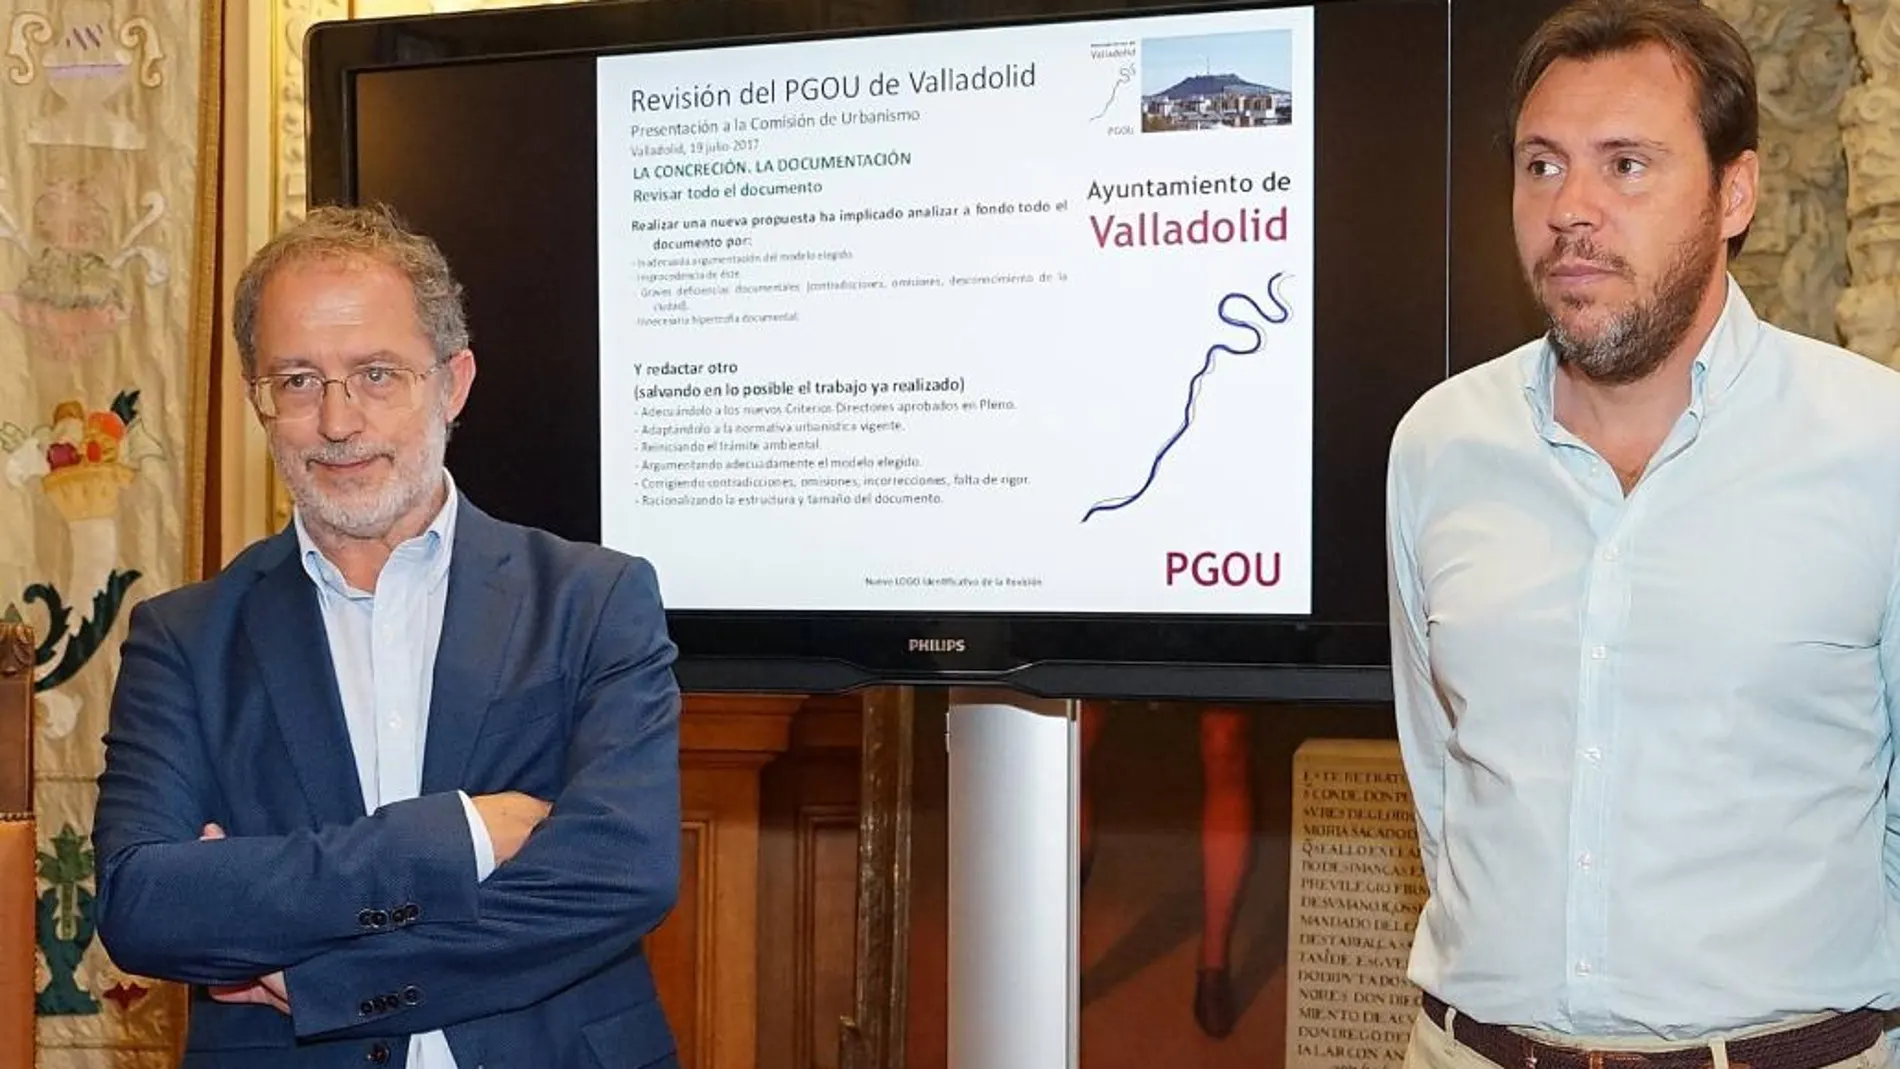 Manuel Saravia y Óscar Puente presentan el nuevo PGOU para la ciudad de Valladolid